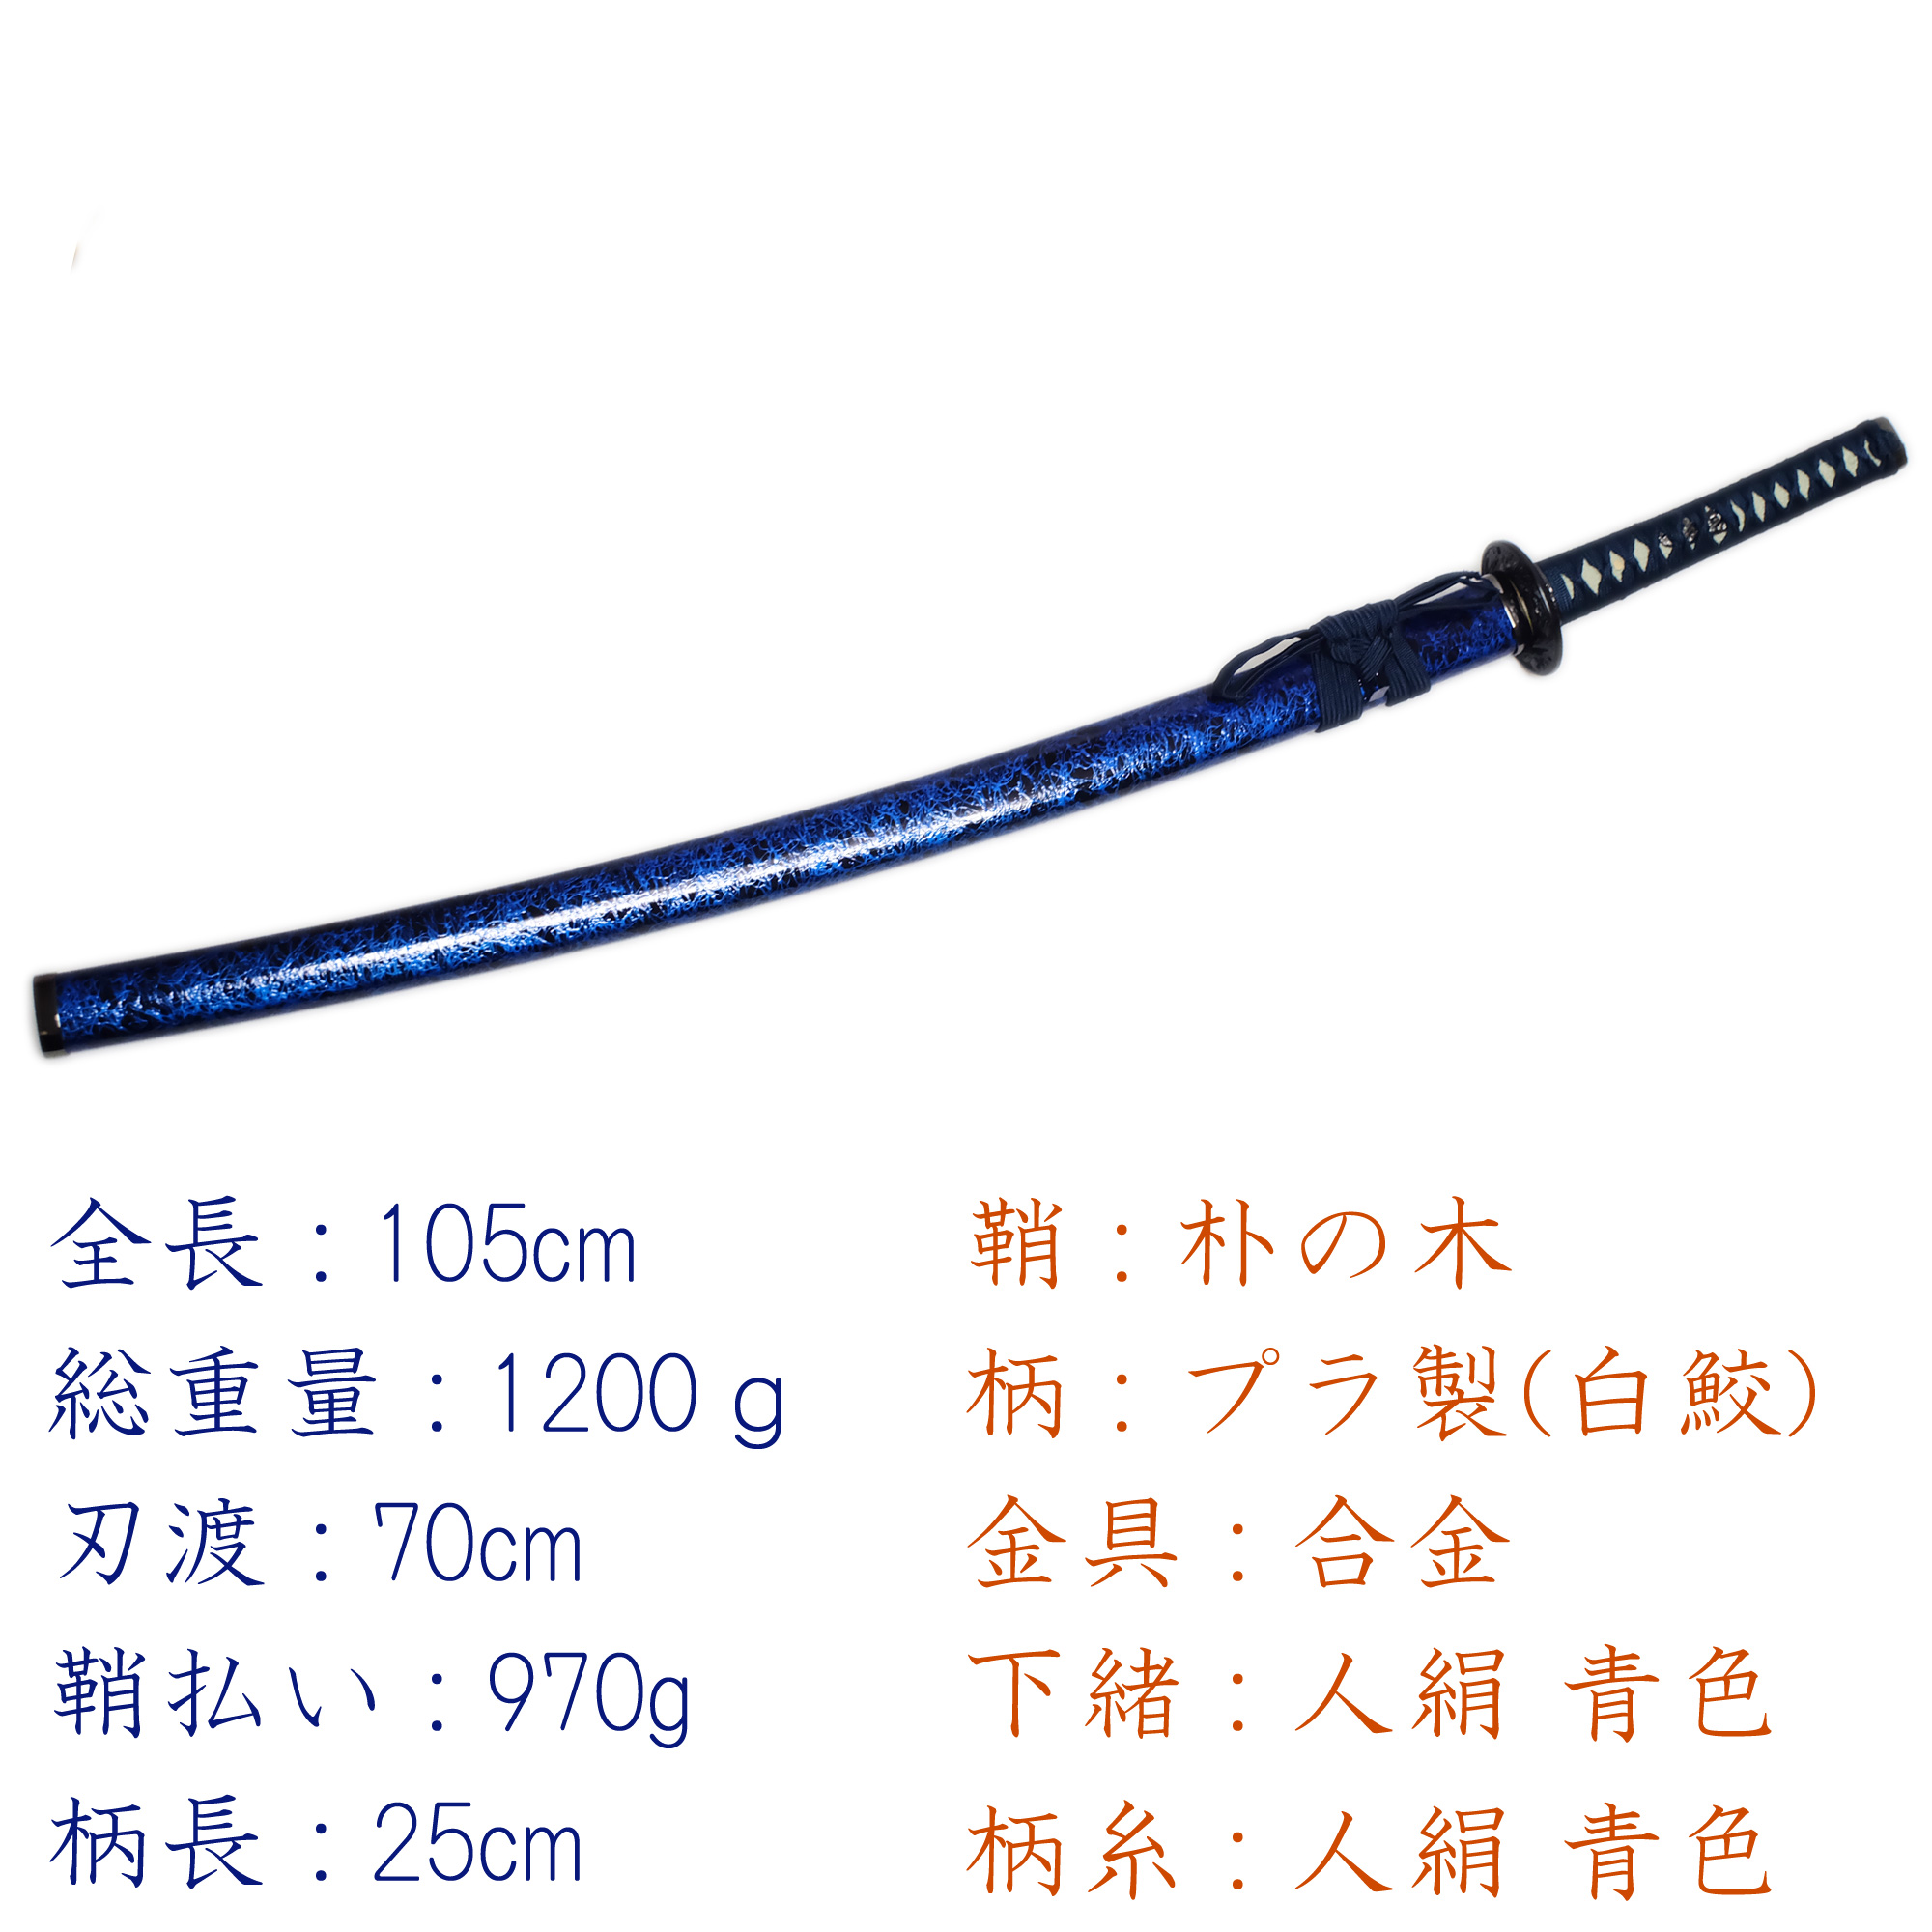 匠刀房 雲シリーズ 青雲 NEU-045L - 大刀 模造刀